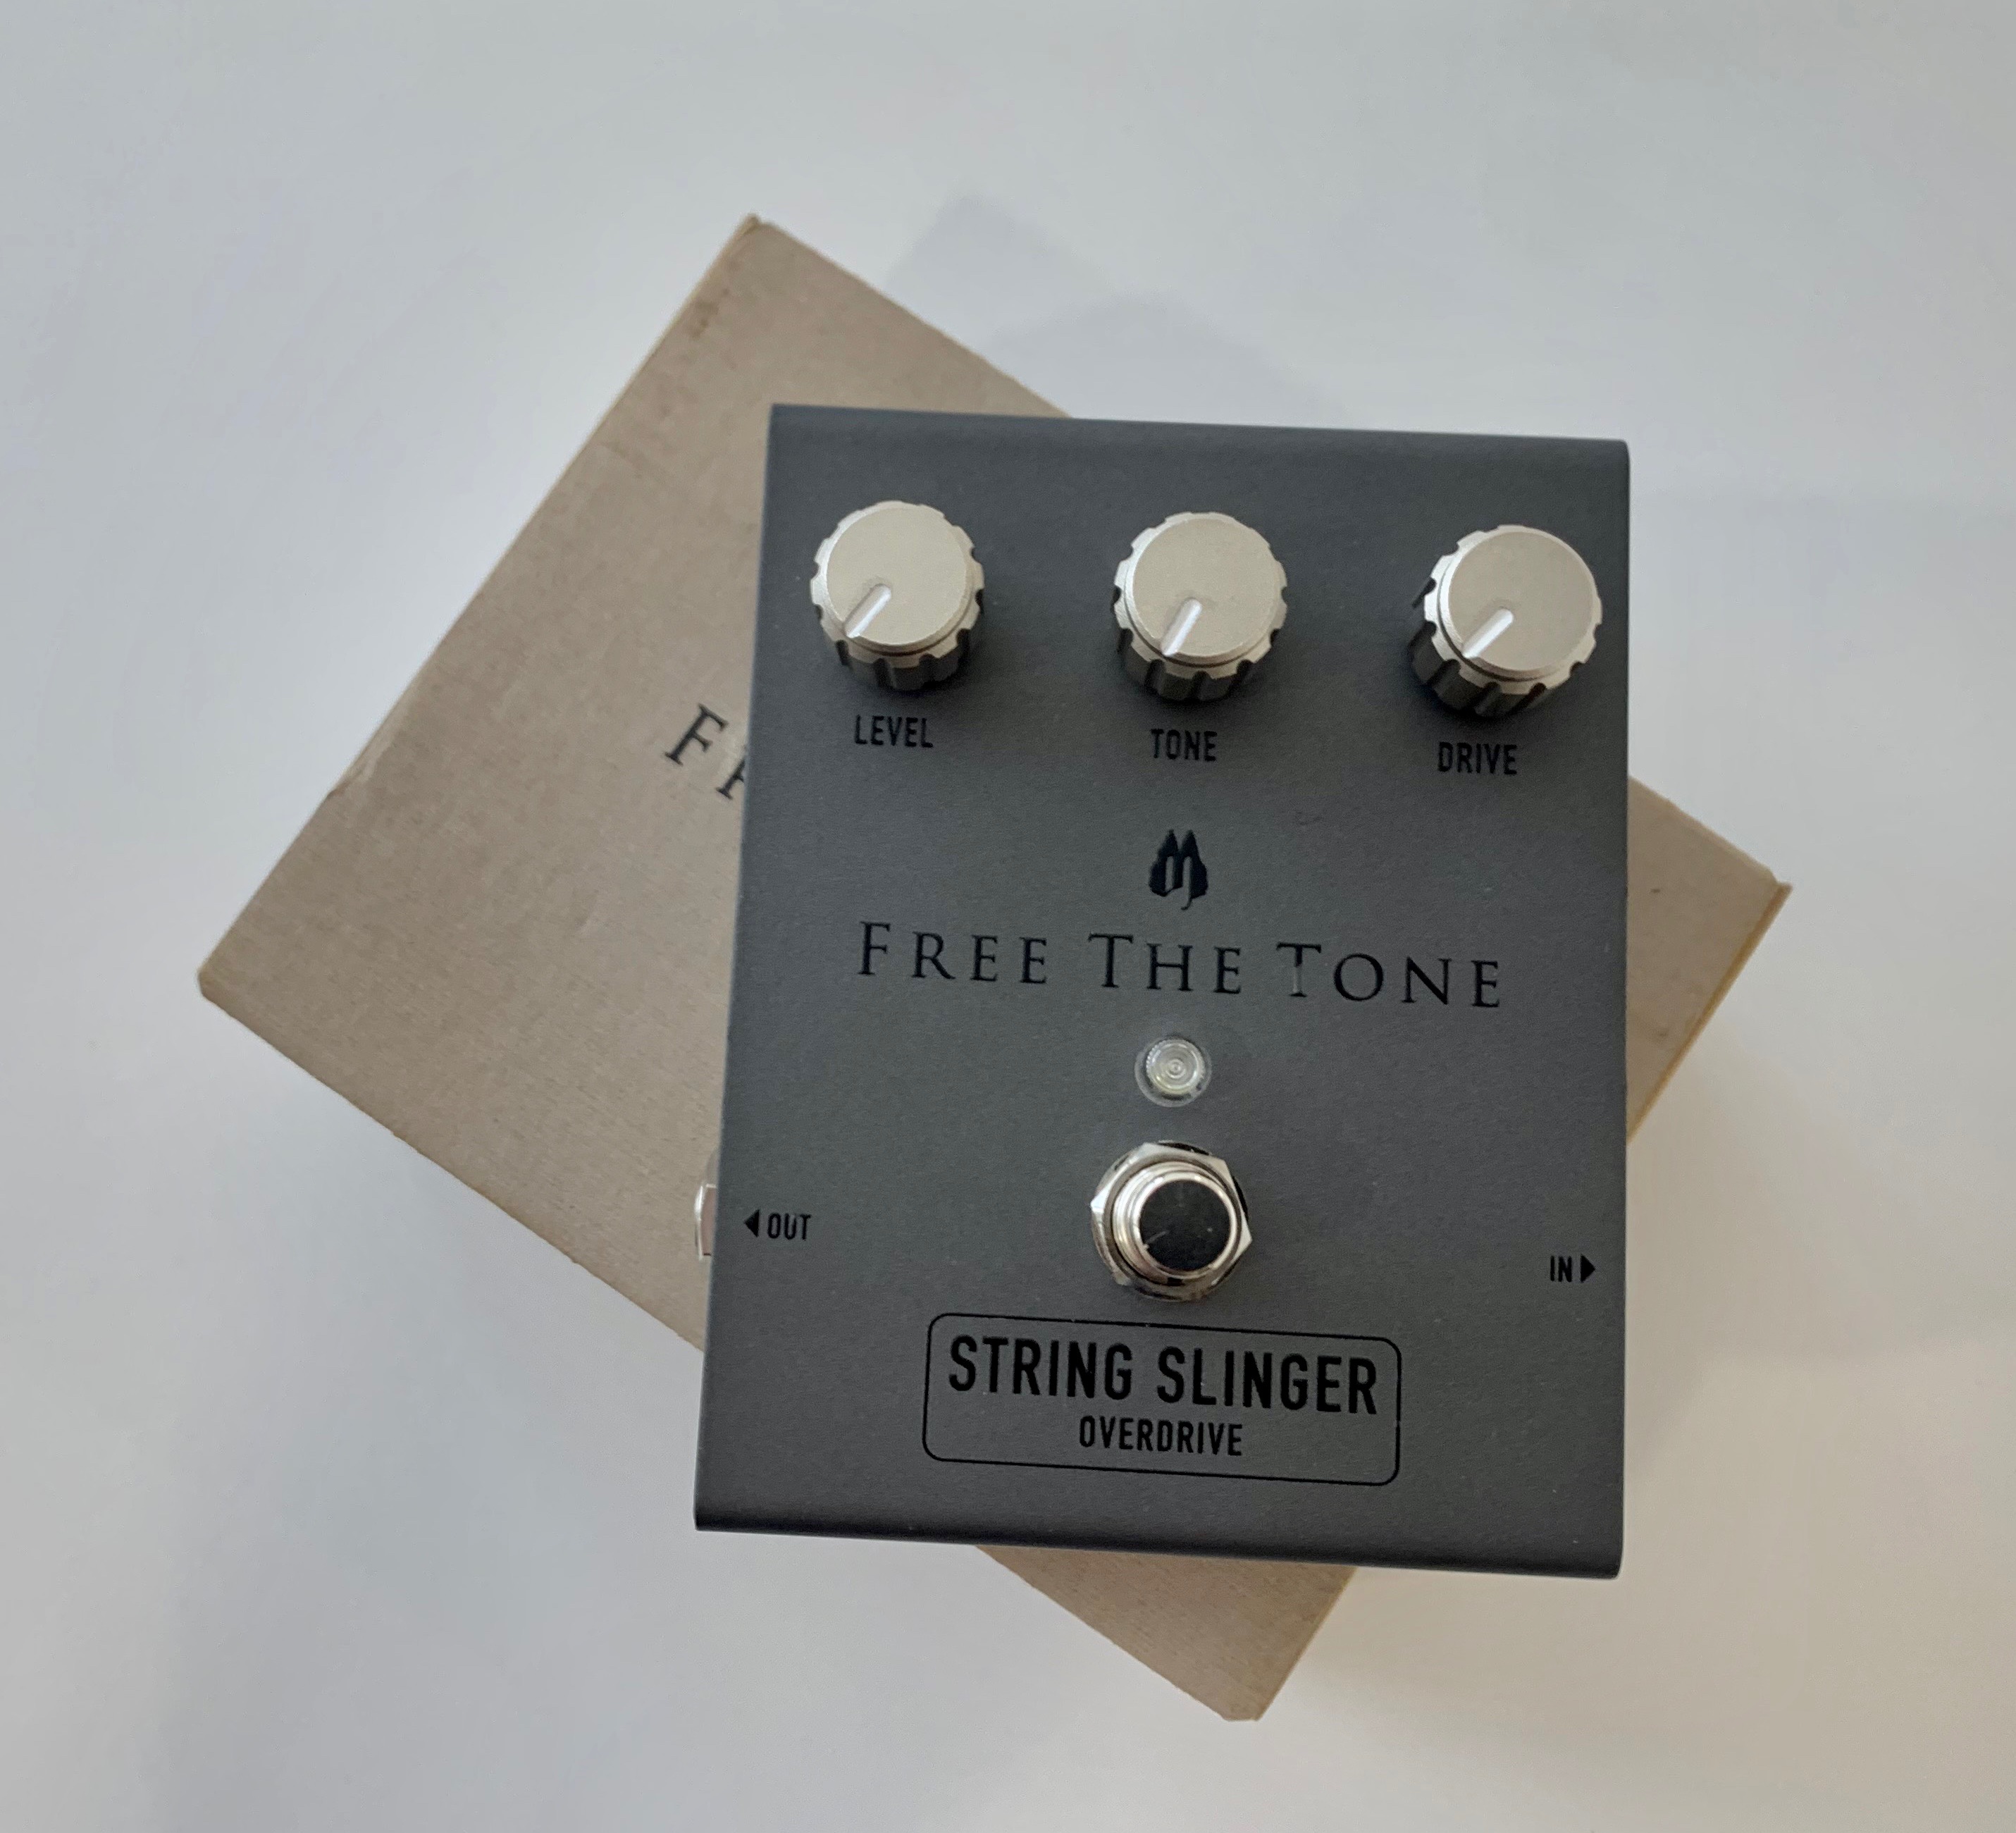 String Slinger Overdrive Free The Tone - Audiofanzine